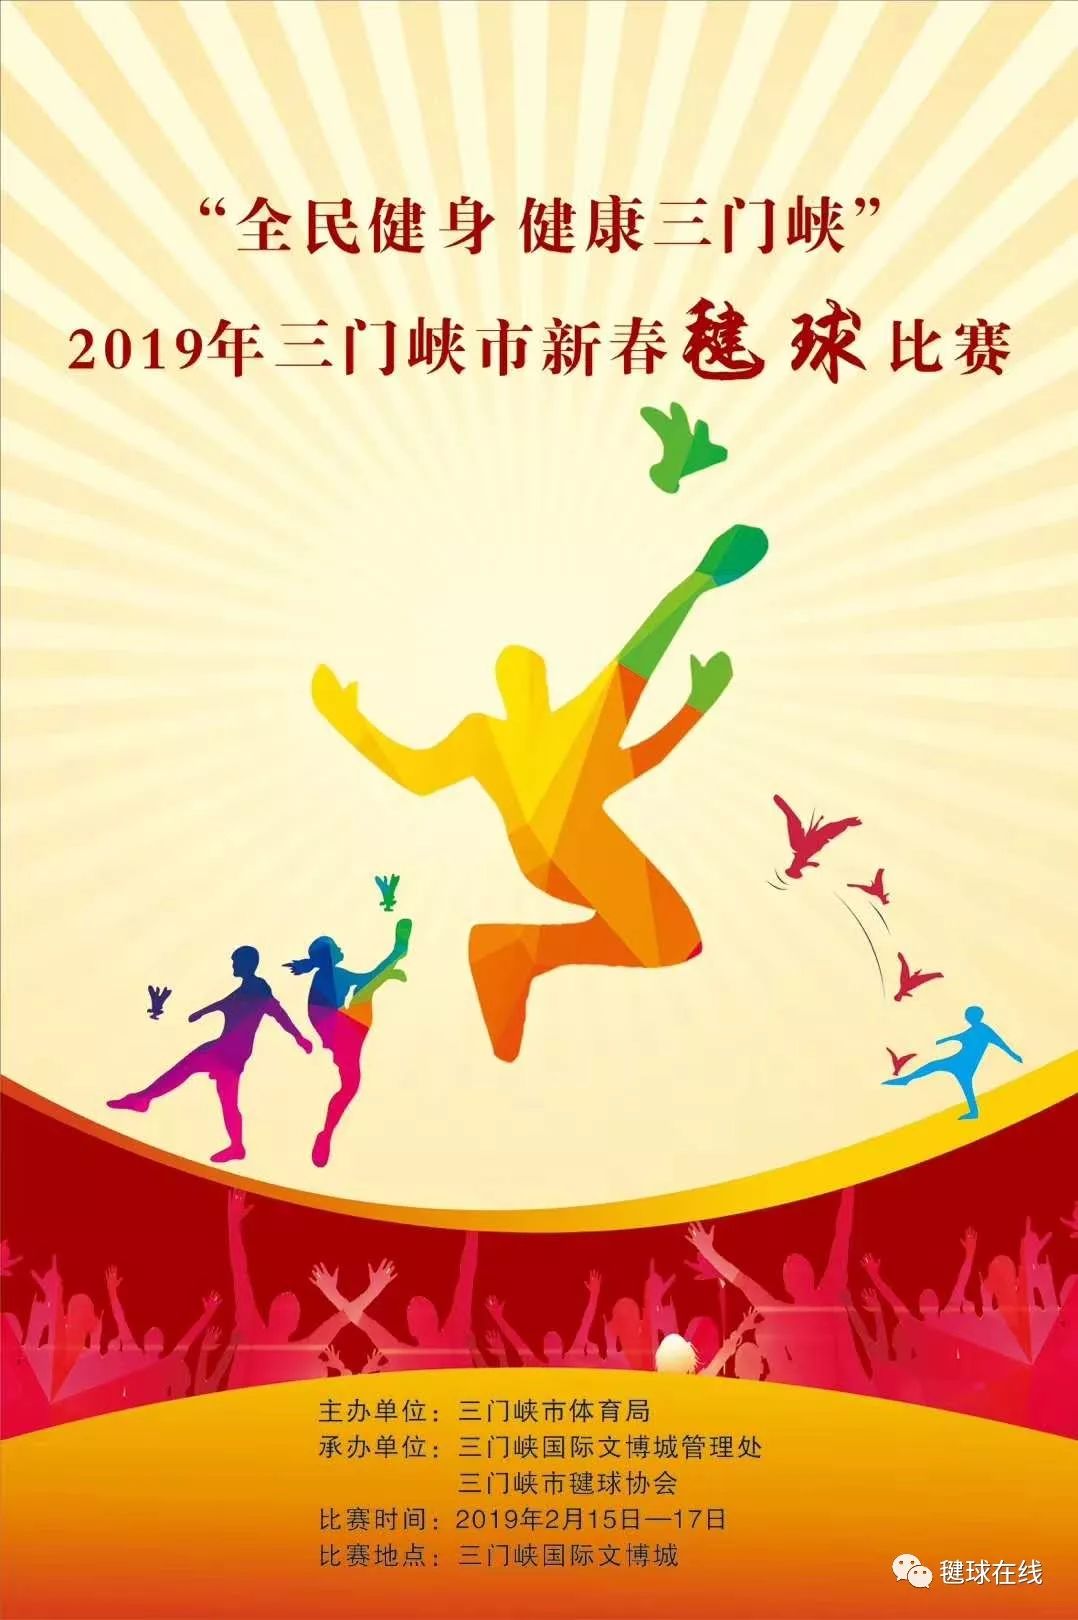 2019年三门峡市新春毽球比赛落幕;肇庆市第六届毽球锦标赛落下帷幕.